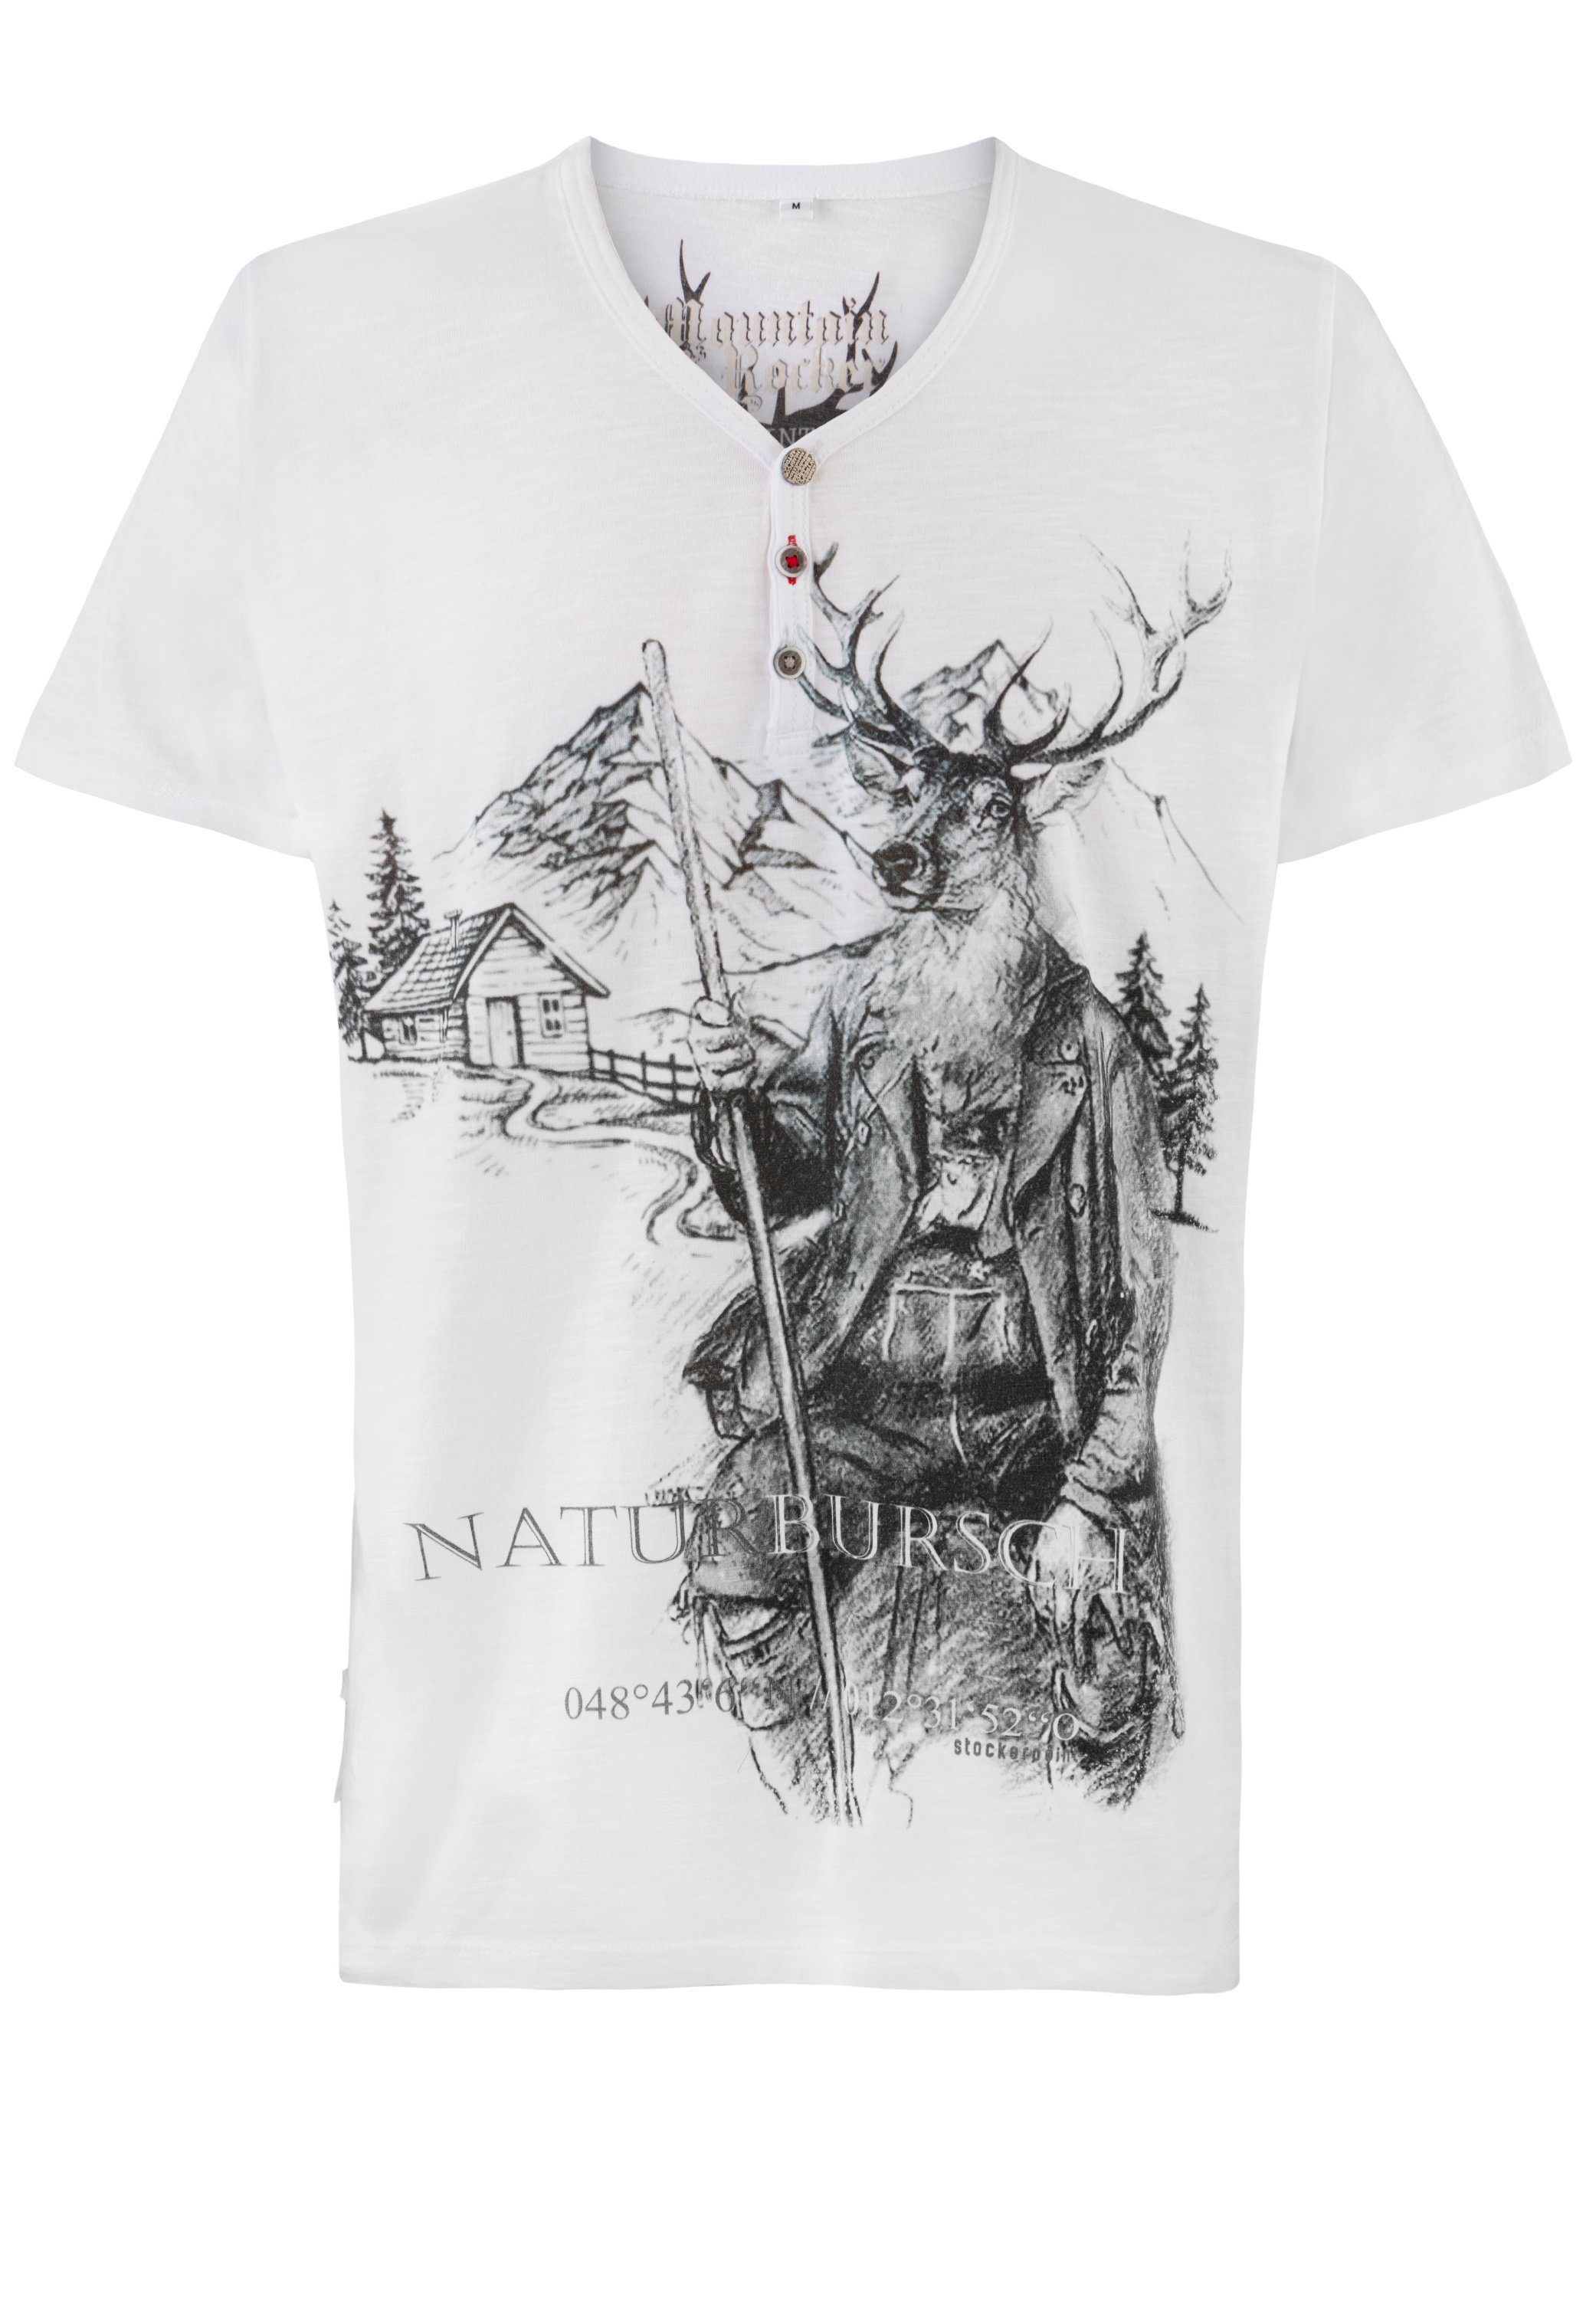 Stockerpoint T-Shirt Naturbursch weiss